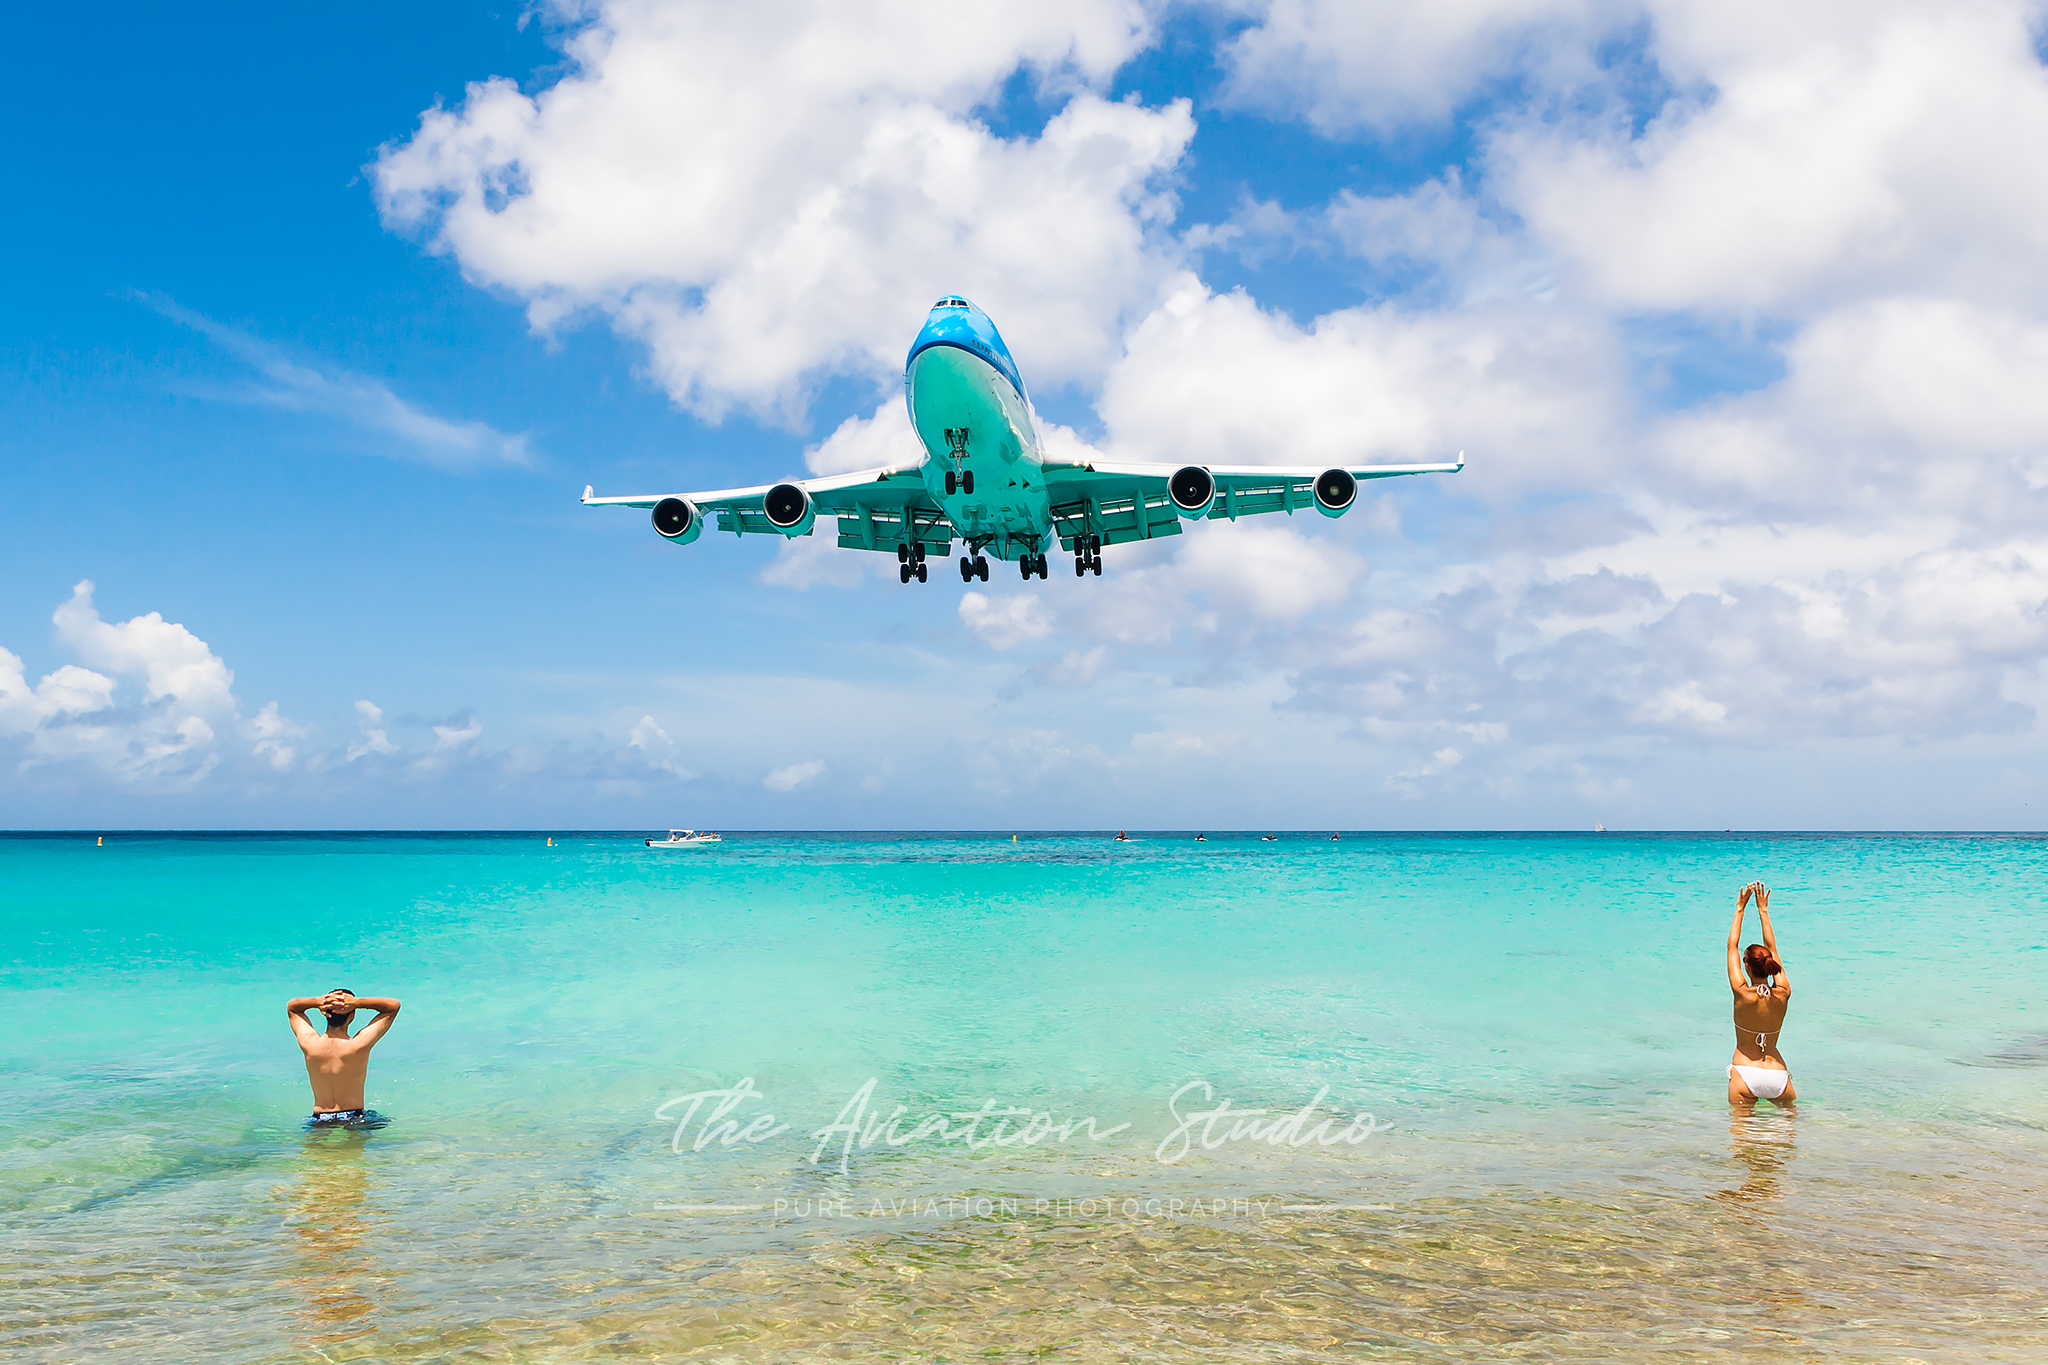 Aviation Mecca: Sint Maarten